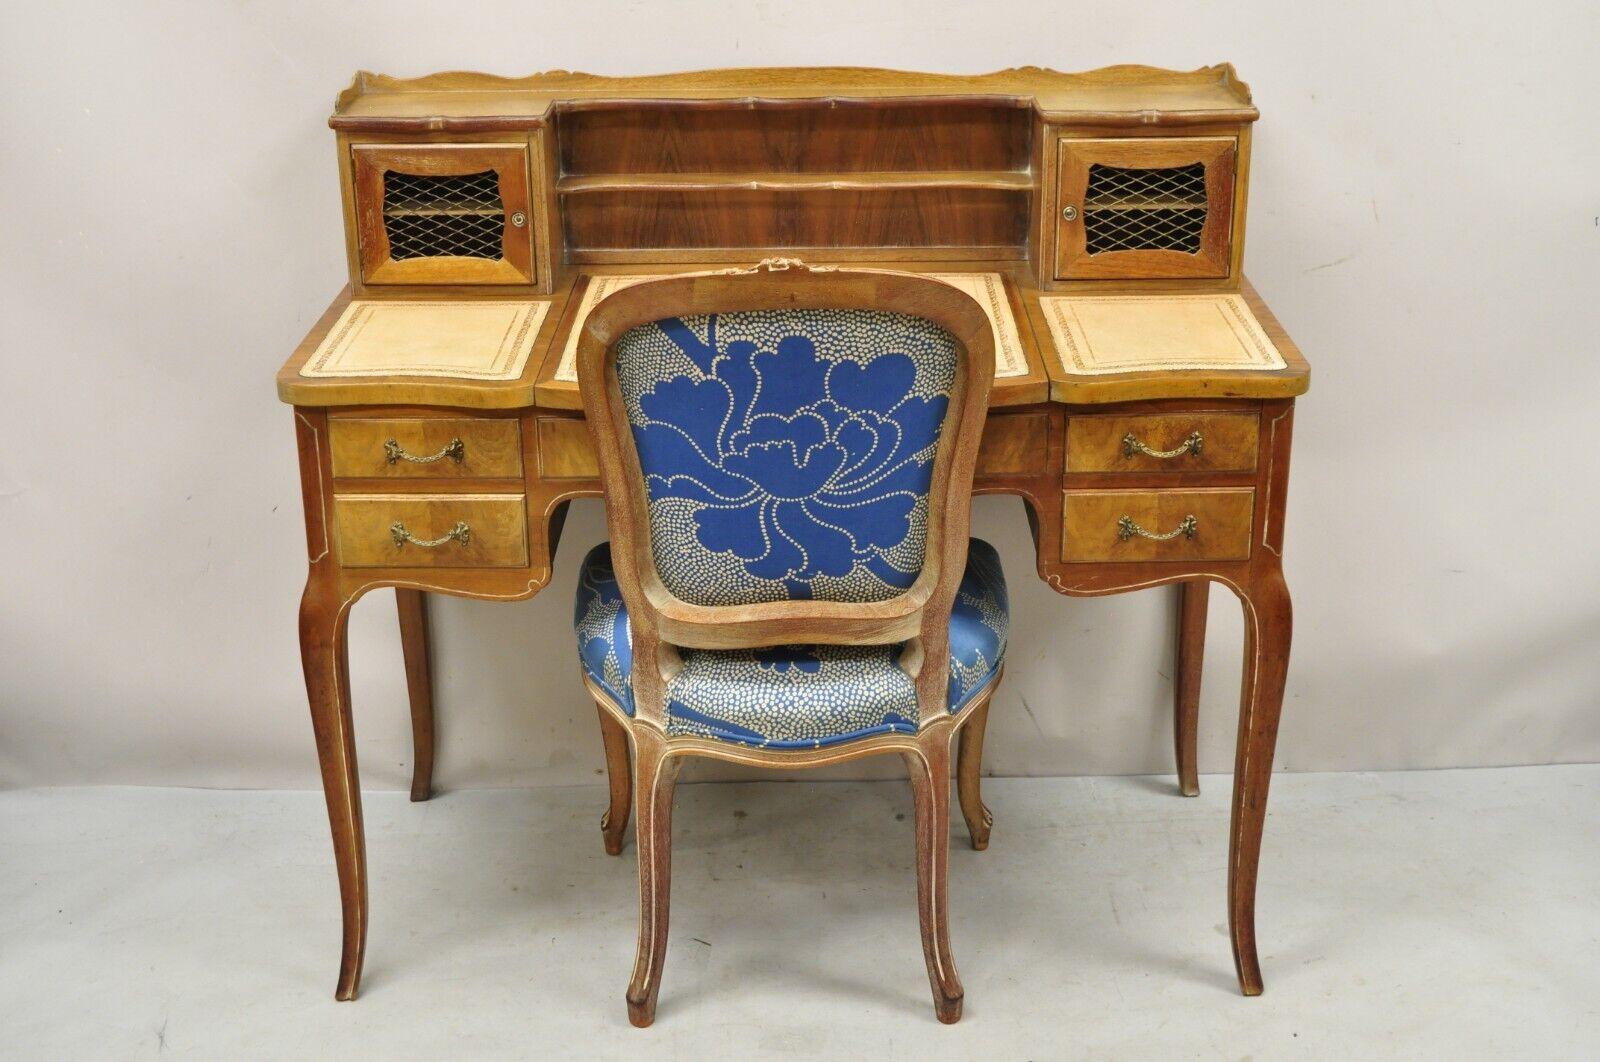 Vintage Französisch Provincial Louis XV Stil Lederplatte Eitelkeit Schreibtisch mit Spiegel und Stuhl. Artikel verfügt über eine weiß gewaschene Oberfläche, florale geschnitzte Akzente, blauen Blumendruck Stoff, Flip-Top mit Spiegel, nachbearbeitet